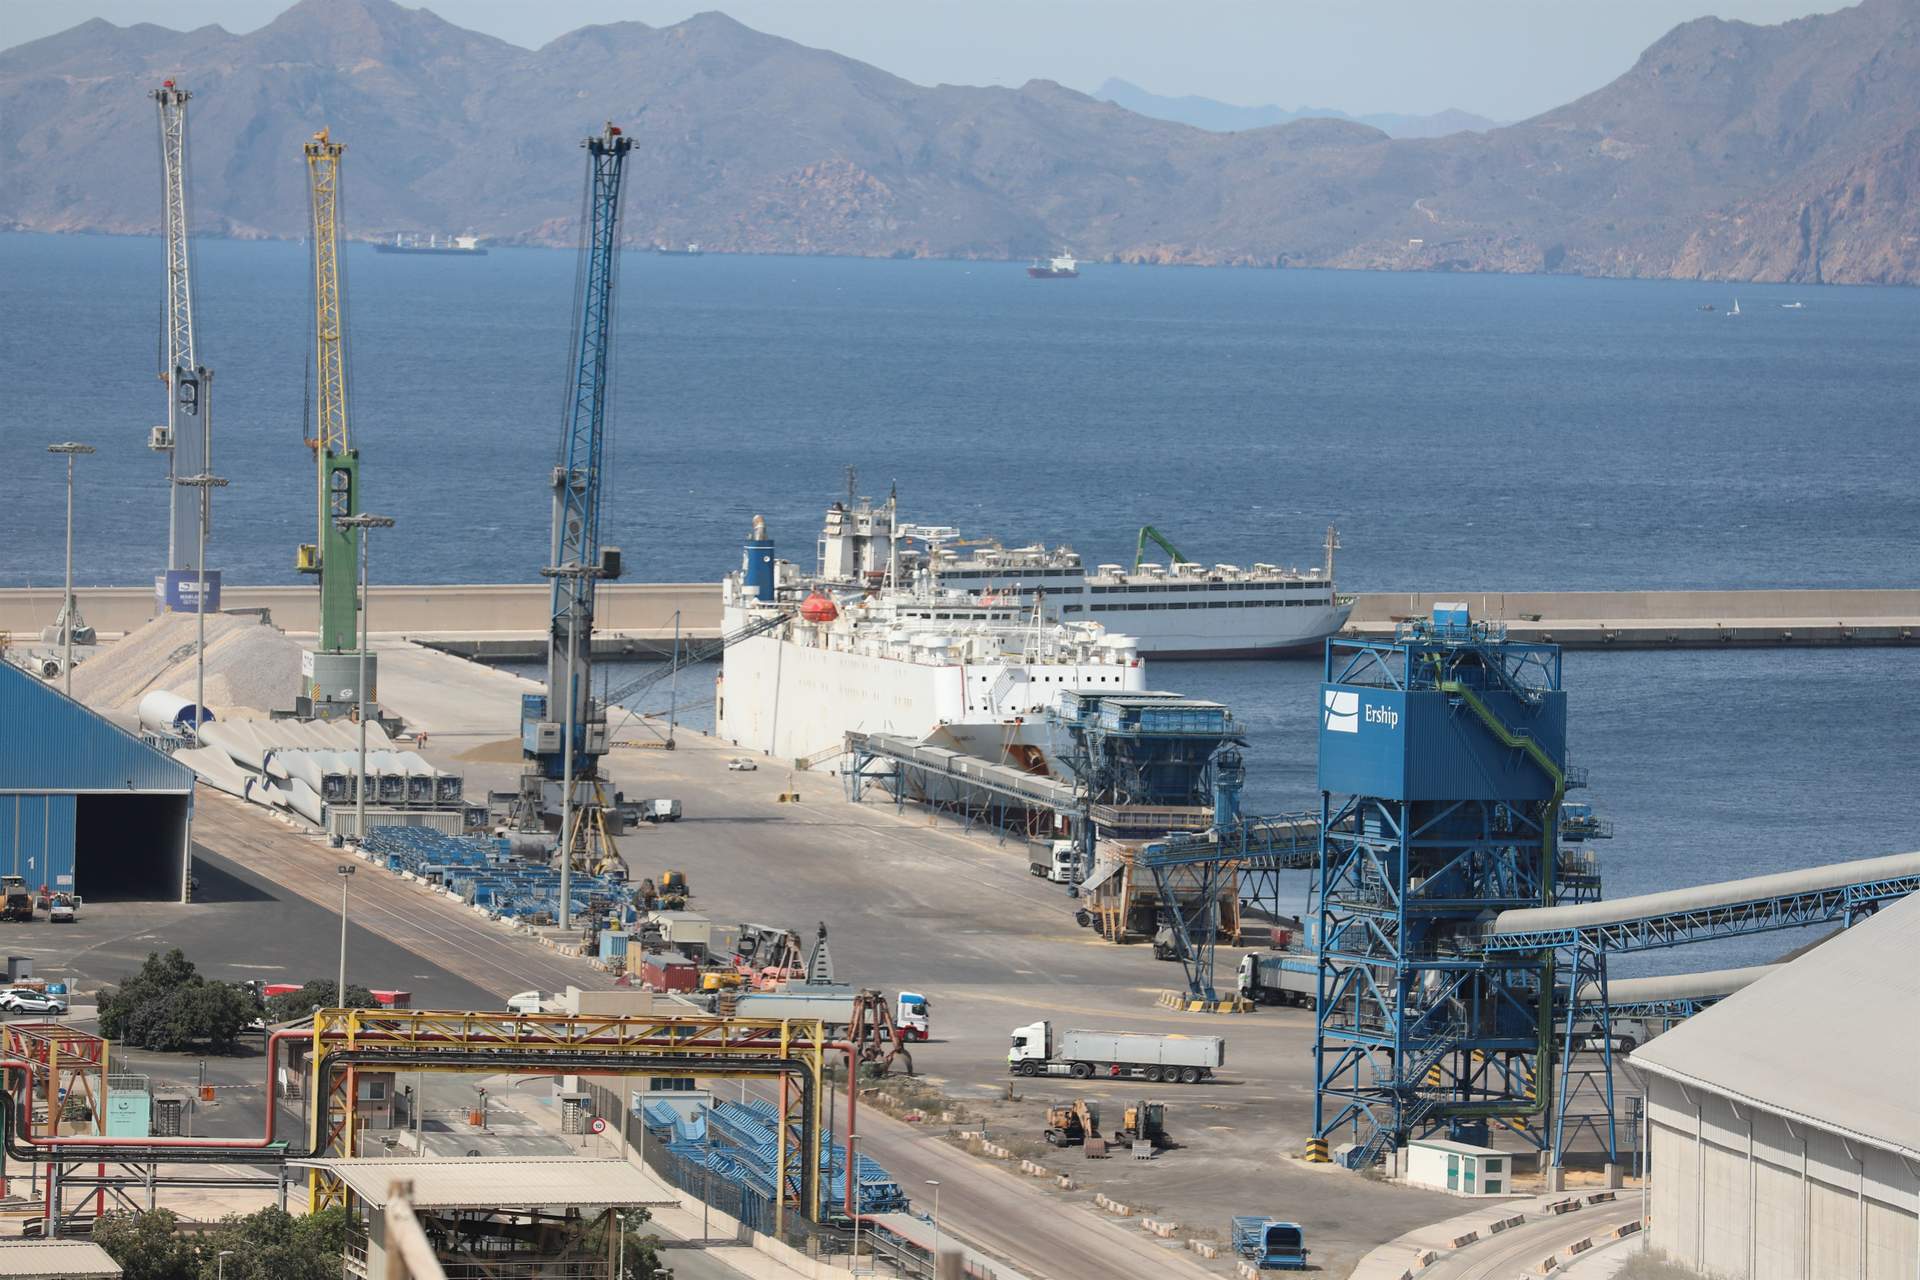 Transportes afirma que el buque Borkum que llegará a Cartagena no se dirige a Israel y tiene la documentación en regla